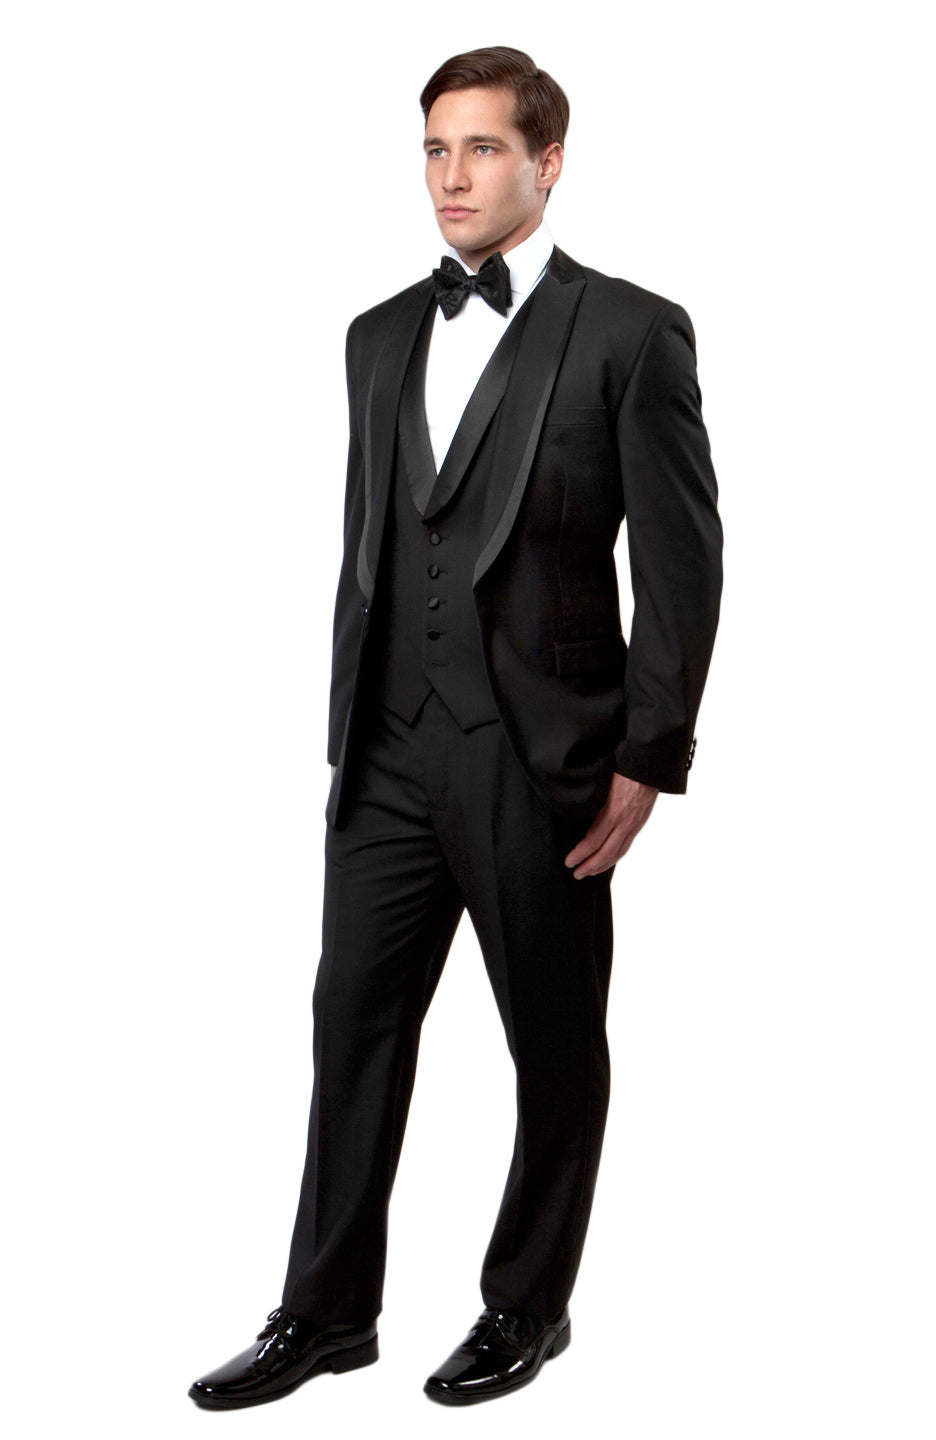 Black / Black Satin Bryan Michaels Shawl Collar Trim/ Peak Lapel Tuxedo Solid Slim Fit Prom Tuxedo For Men MT239S-00 - Hattitude